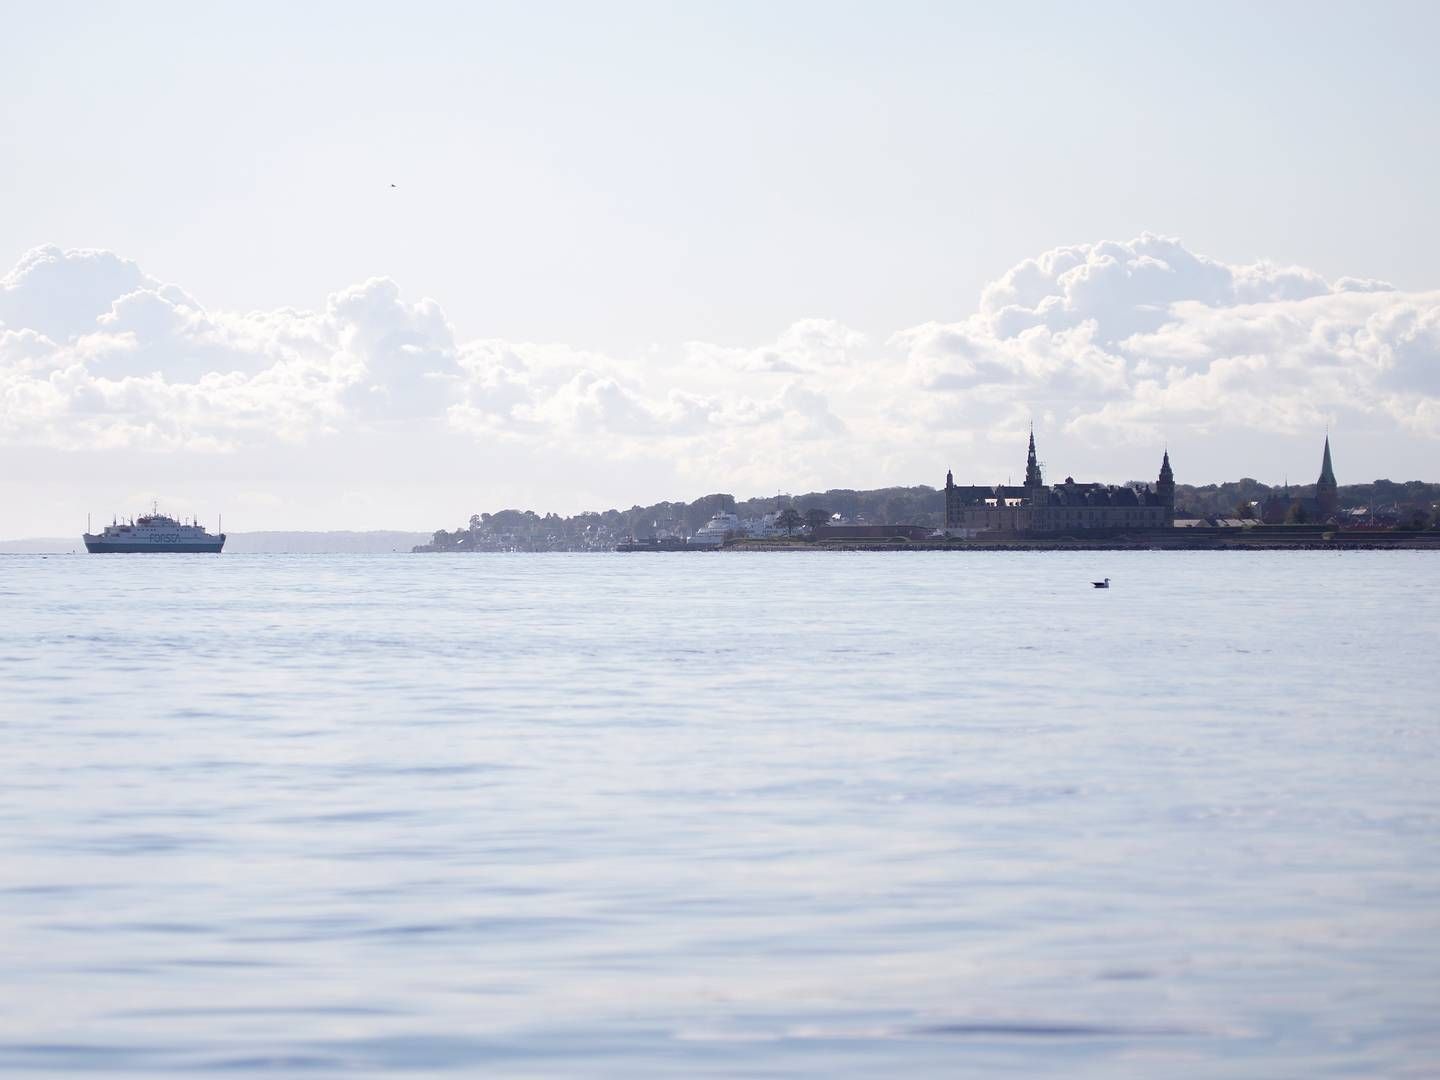 Det er blandt andet udsigten til en fast forbindelse mellem Helsingør og Helsingborg, som danskerne er skeptiske overfor. | Foto: Finn Frandsen/Ritzau Scanpix